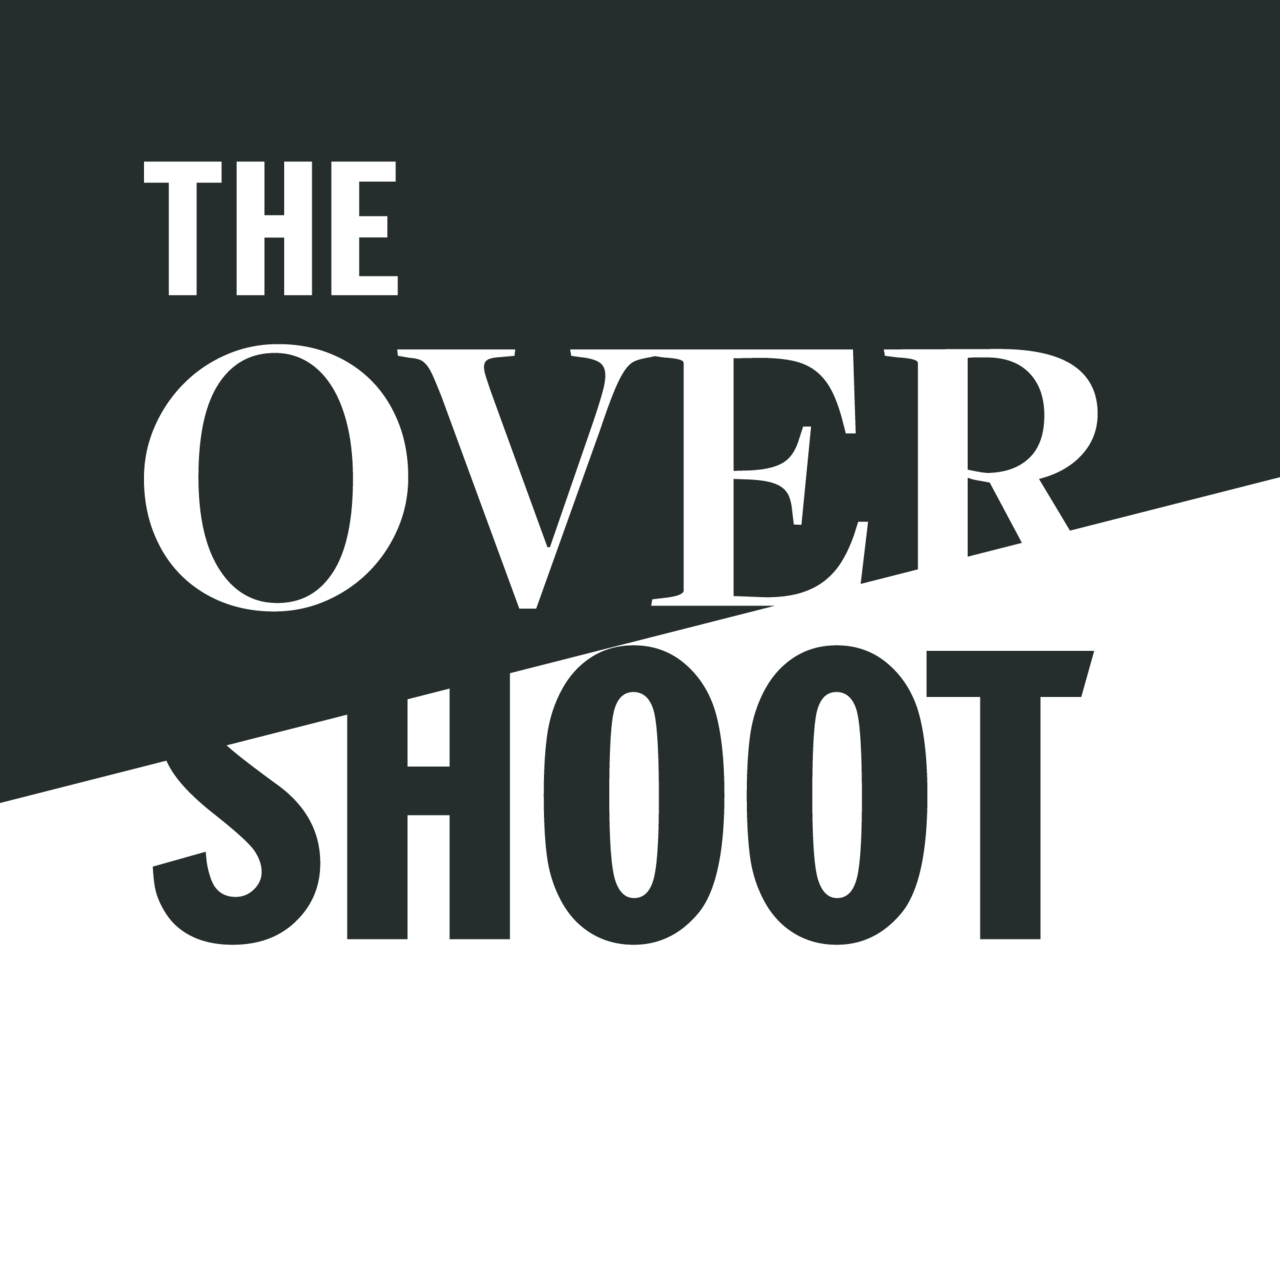 The Overshoot